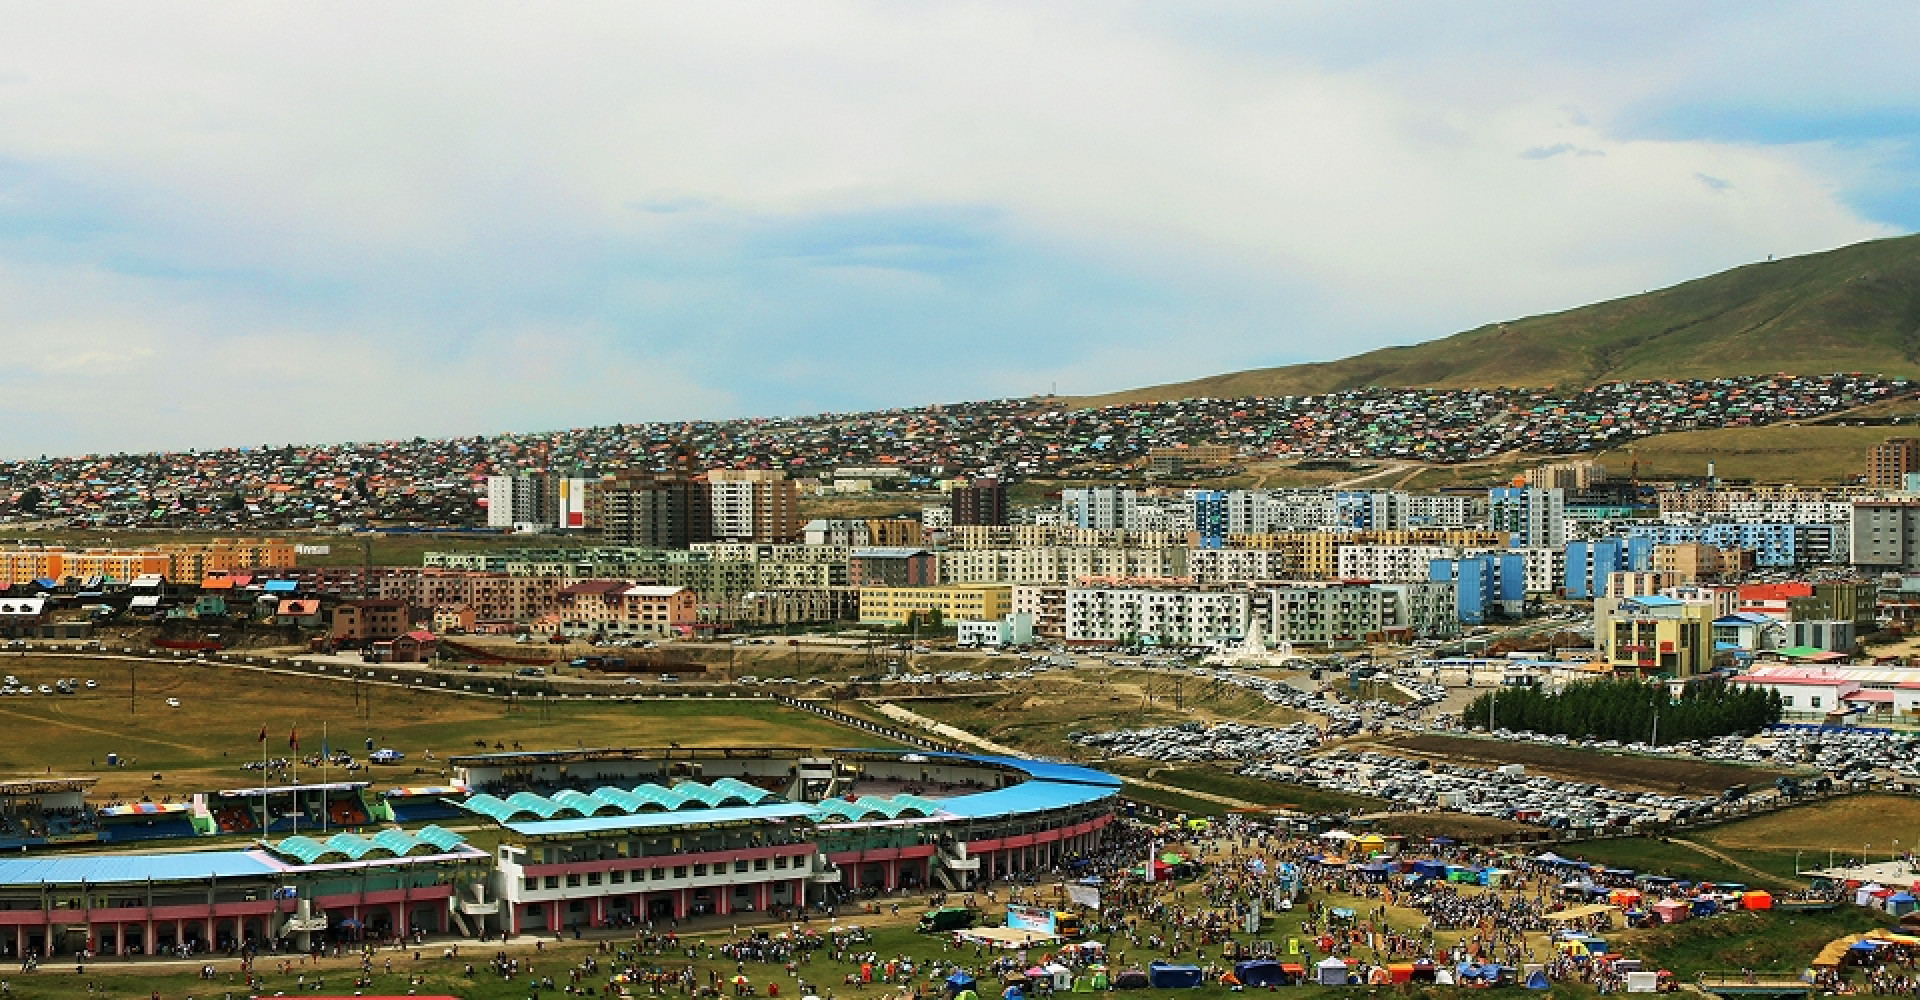 “Erdenet ” Stadium